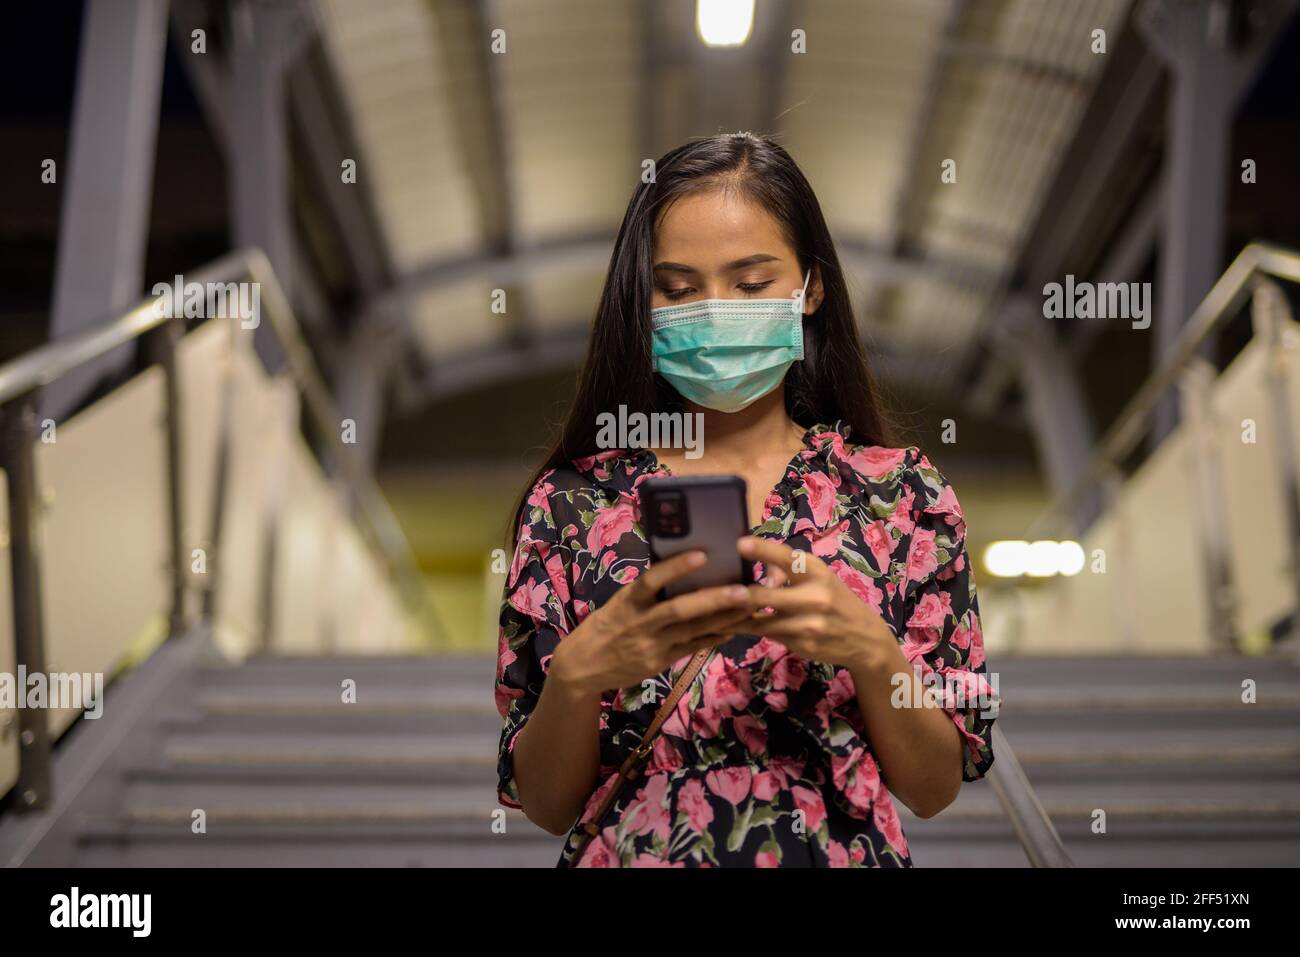 Ritratto di donna che indossa maschera per la protezione contro il coronavirus Covid-19 durante l'uso del telefono cellulare di notte Foto Stock